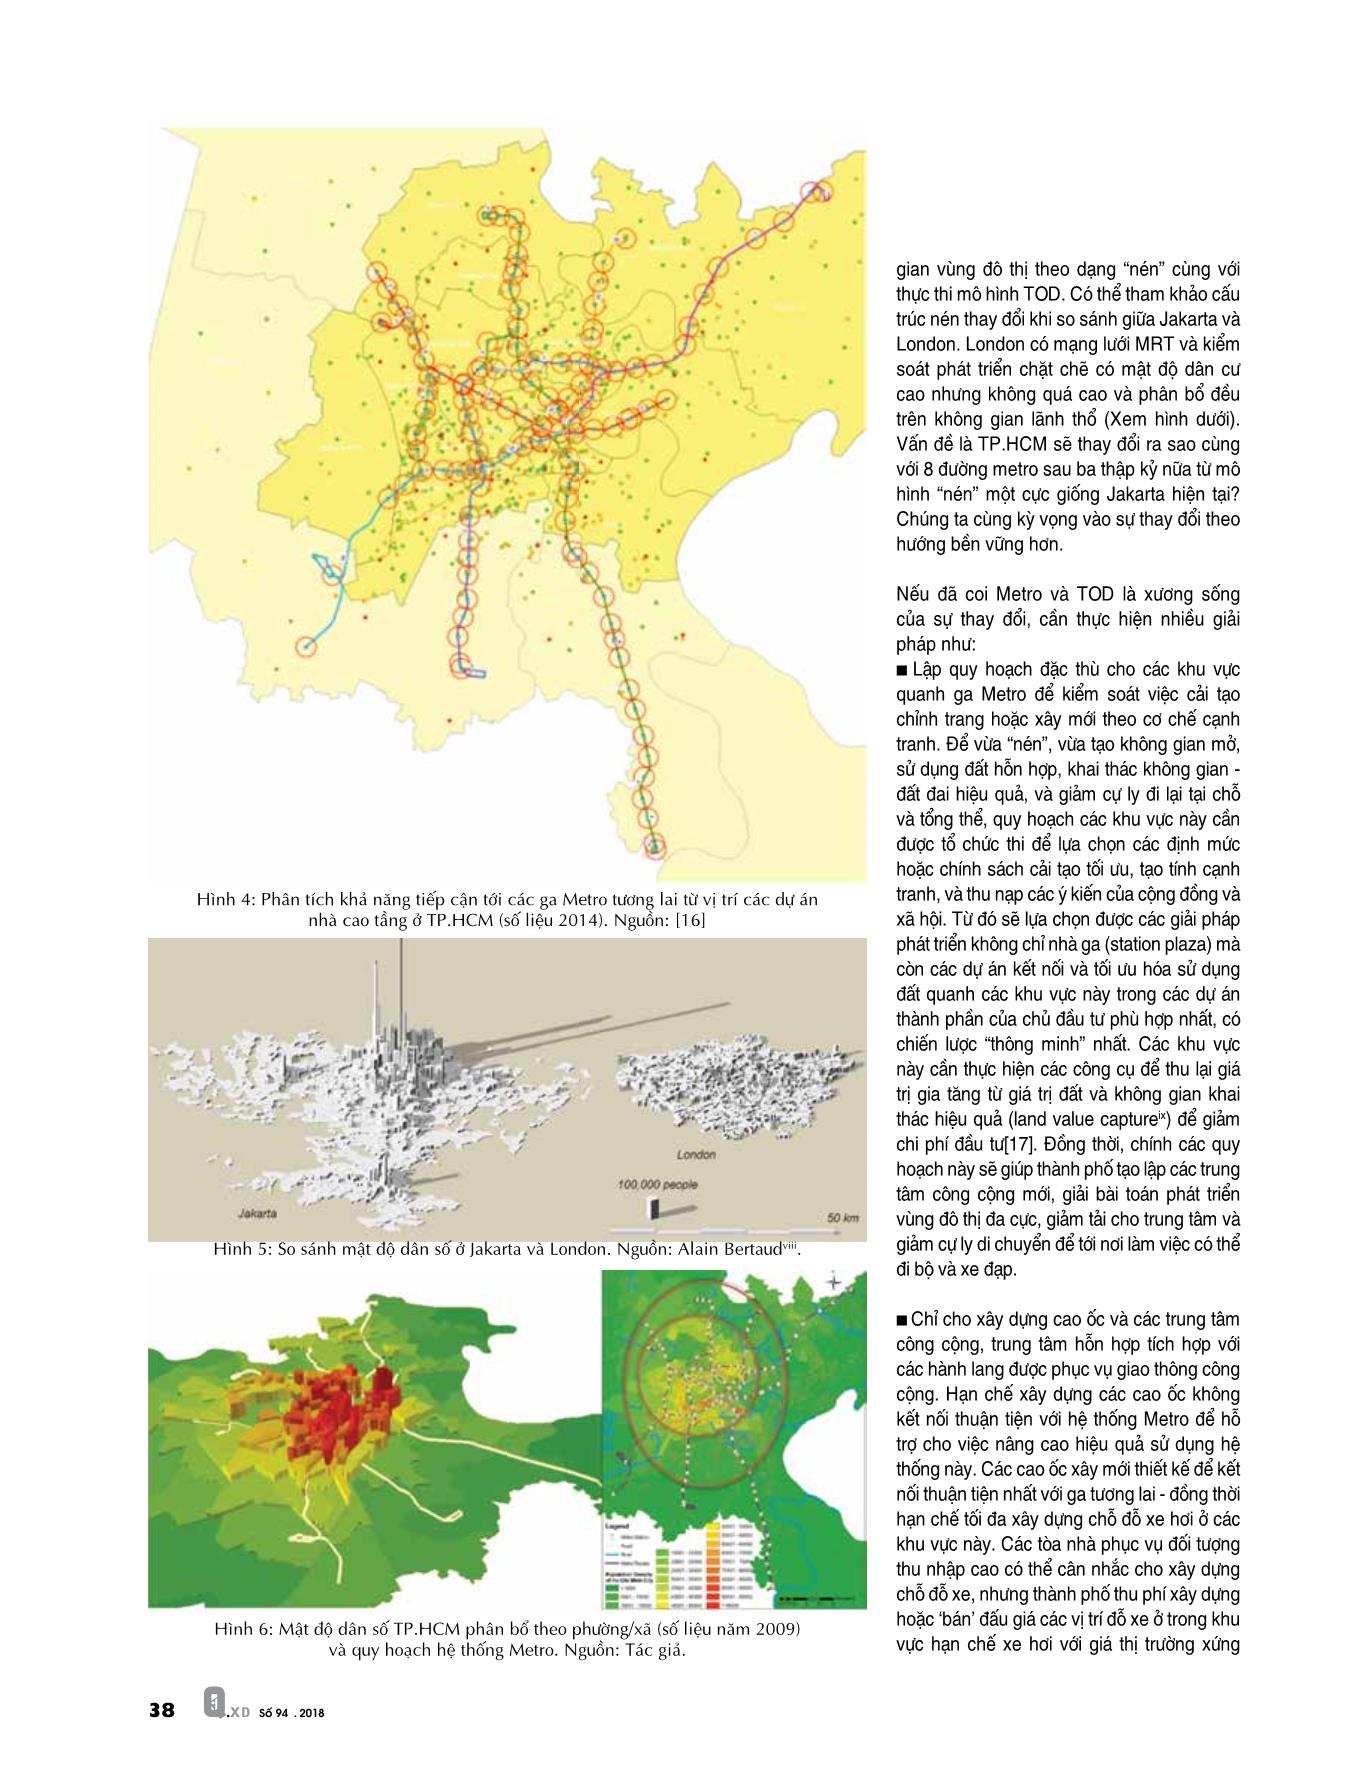 Thảo luận về phát triển đô thị “nén” ở Việt Nam trang 5